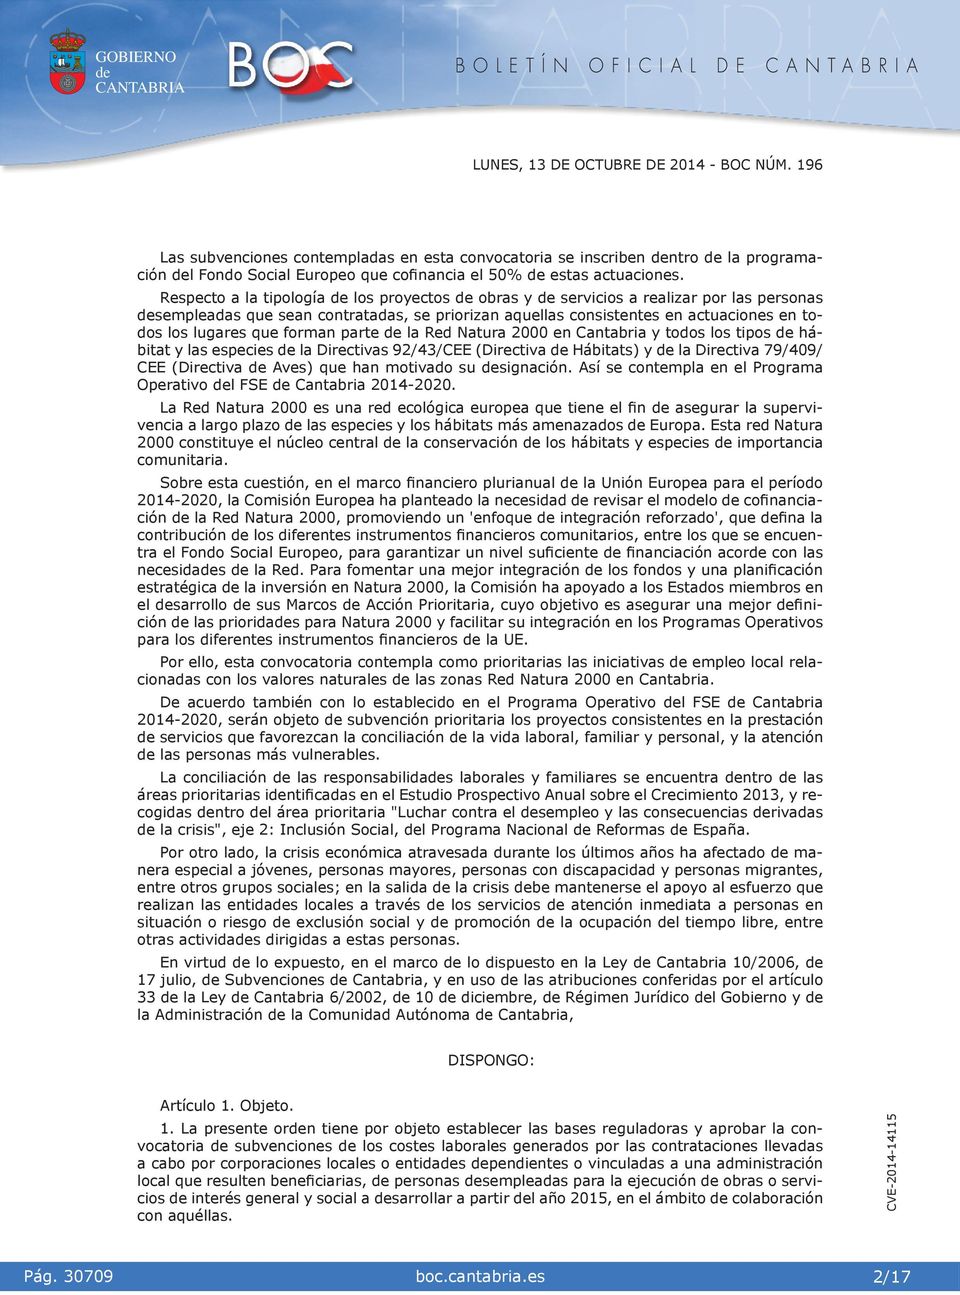 Red Natura 2000 en Cantabra y todos los tpos hábtat y las especes la Drectvas 92/43/CEE (Drectva Hábtats) y la Drectva 79/409/ CEE (Drectva Aves) que han motvado su sgnacón.